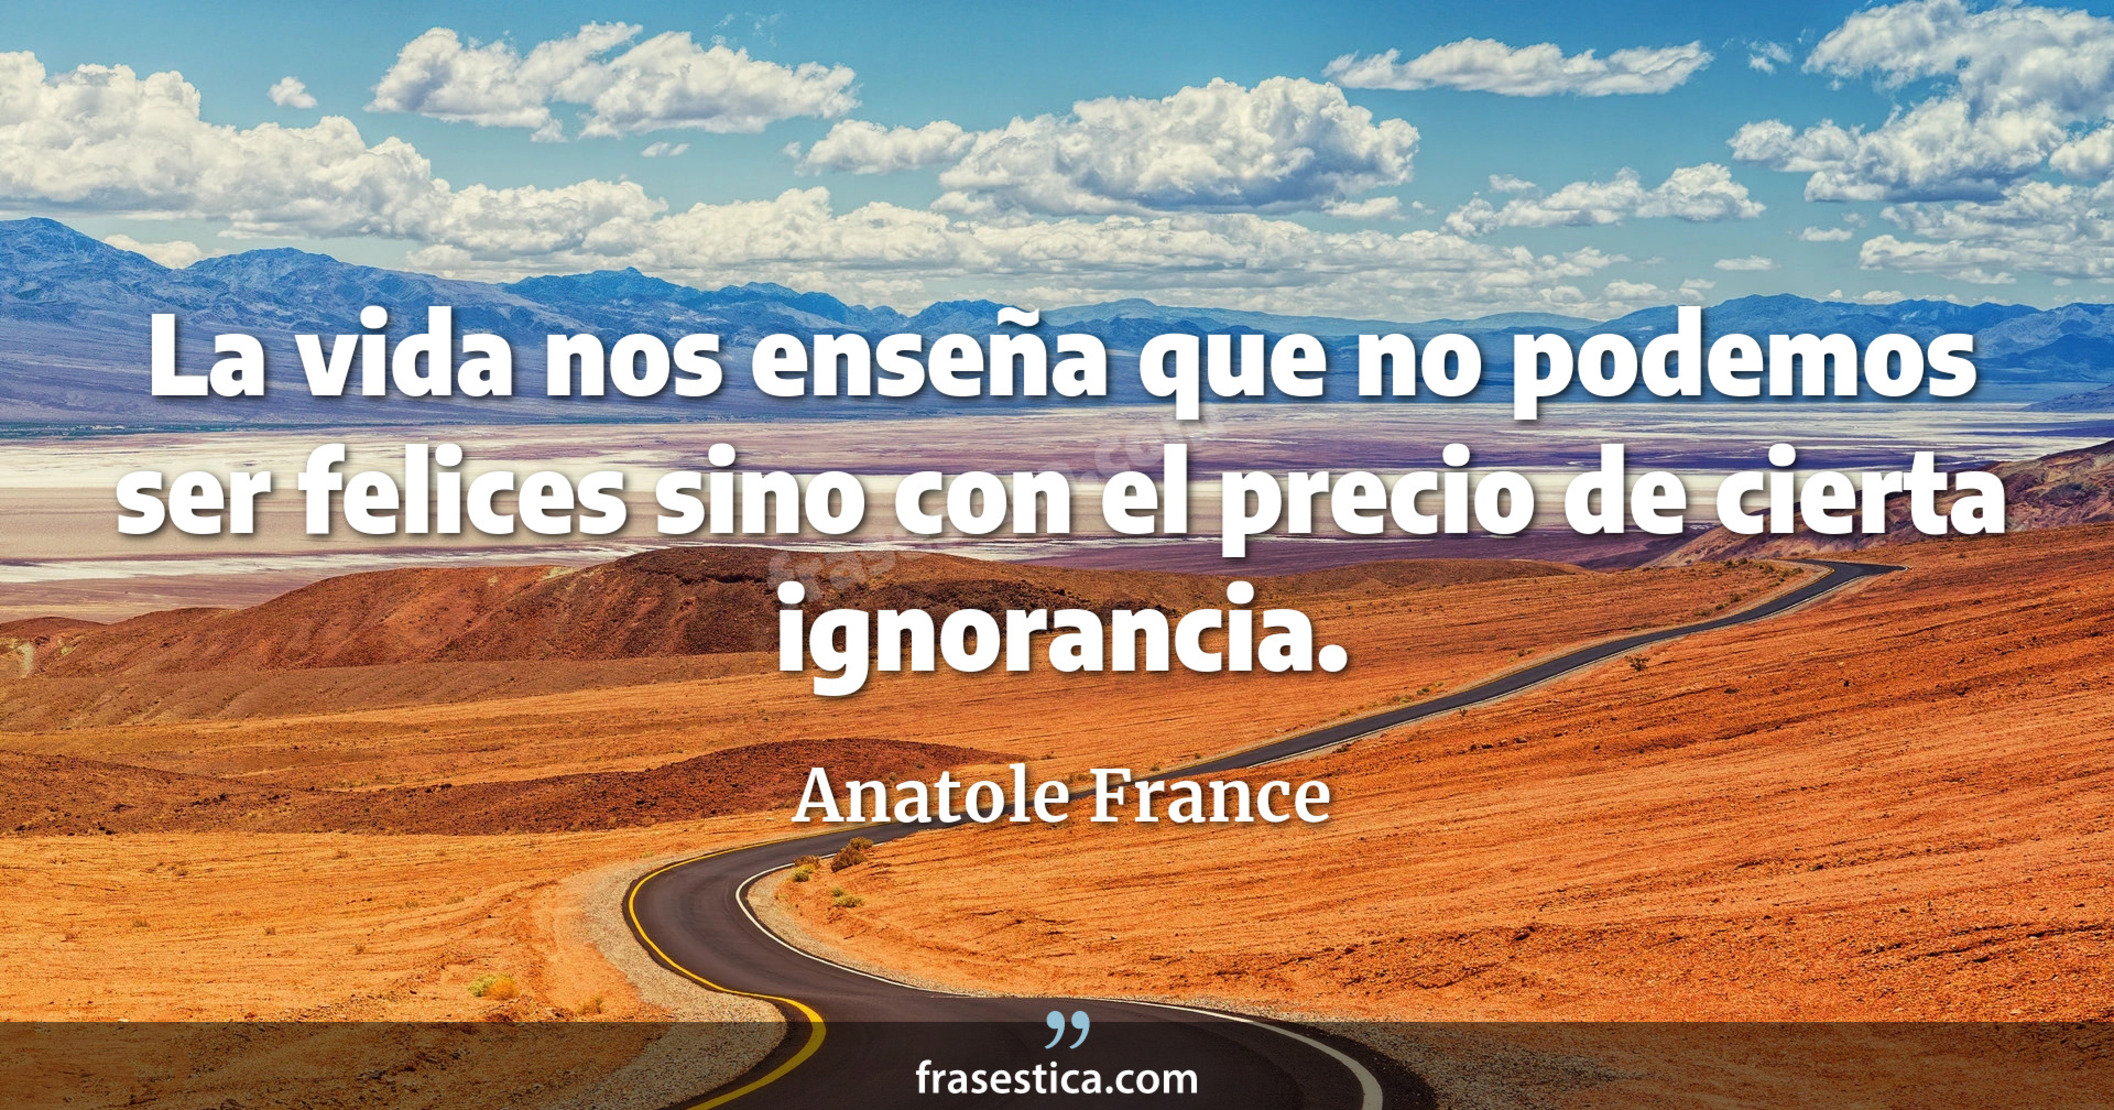 La vida nos enseña que no podemos ser felices sino con el precio de cierta ignorancia. - Anatole France